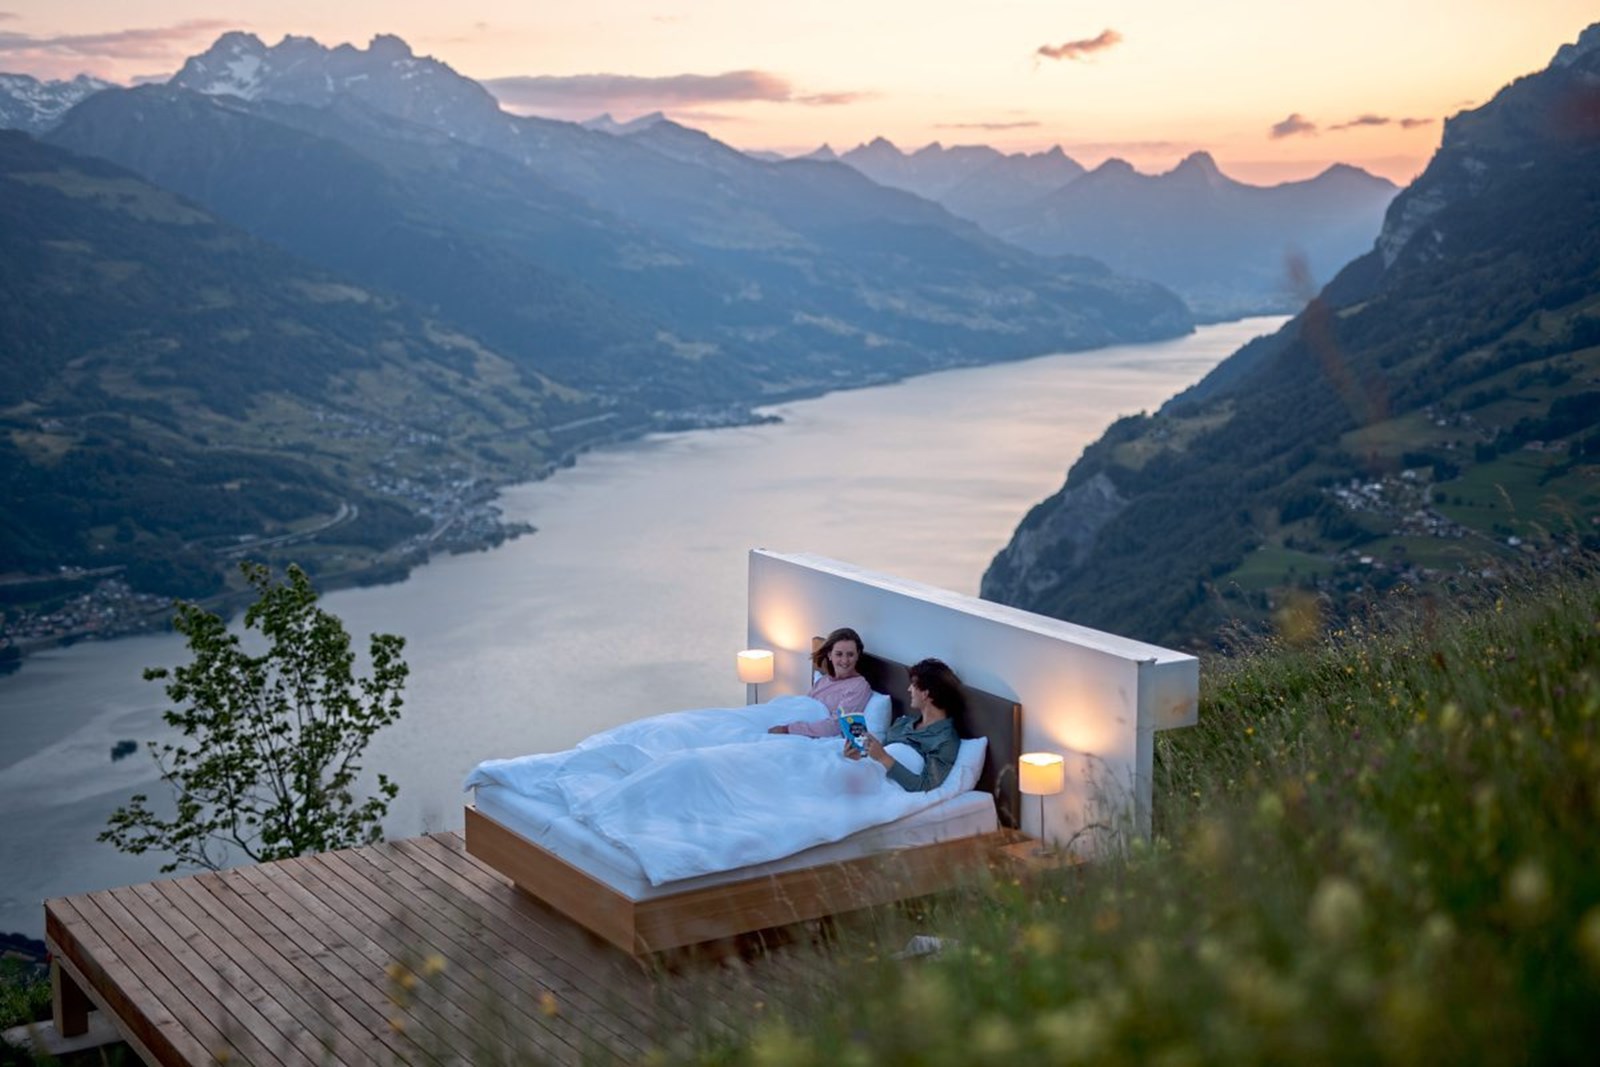 Svizzera: l’hotel di lusso con le stanze all’aria aperta. Spettacolari